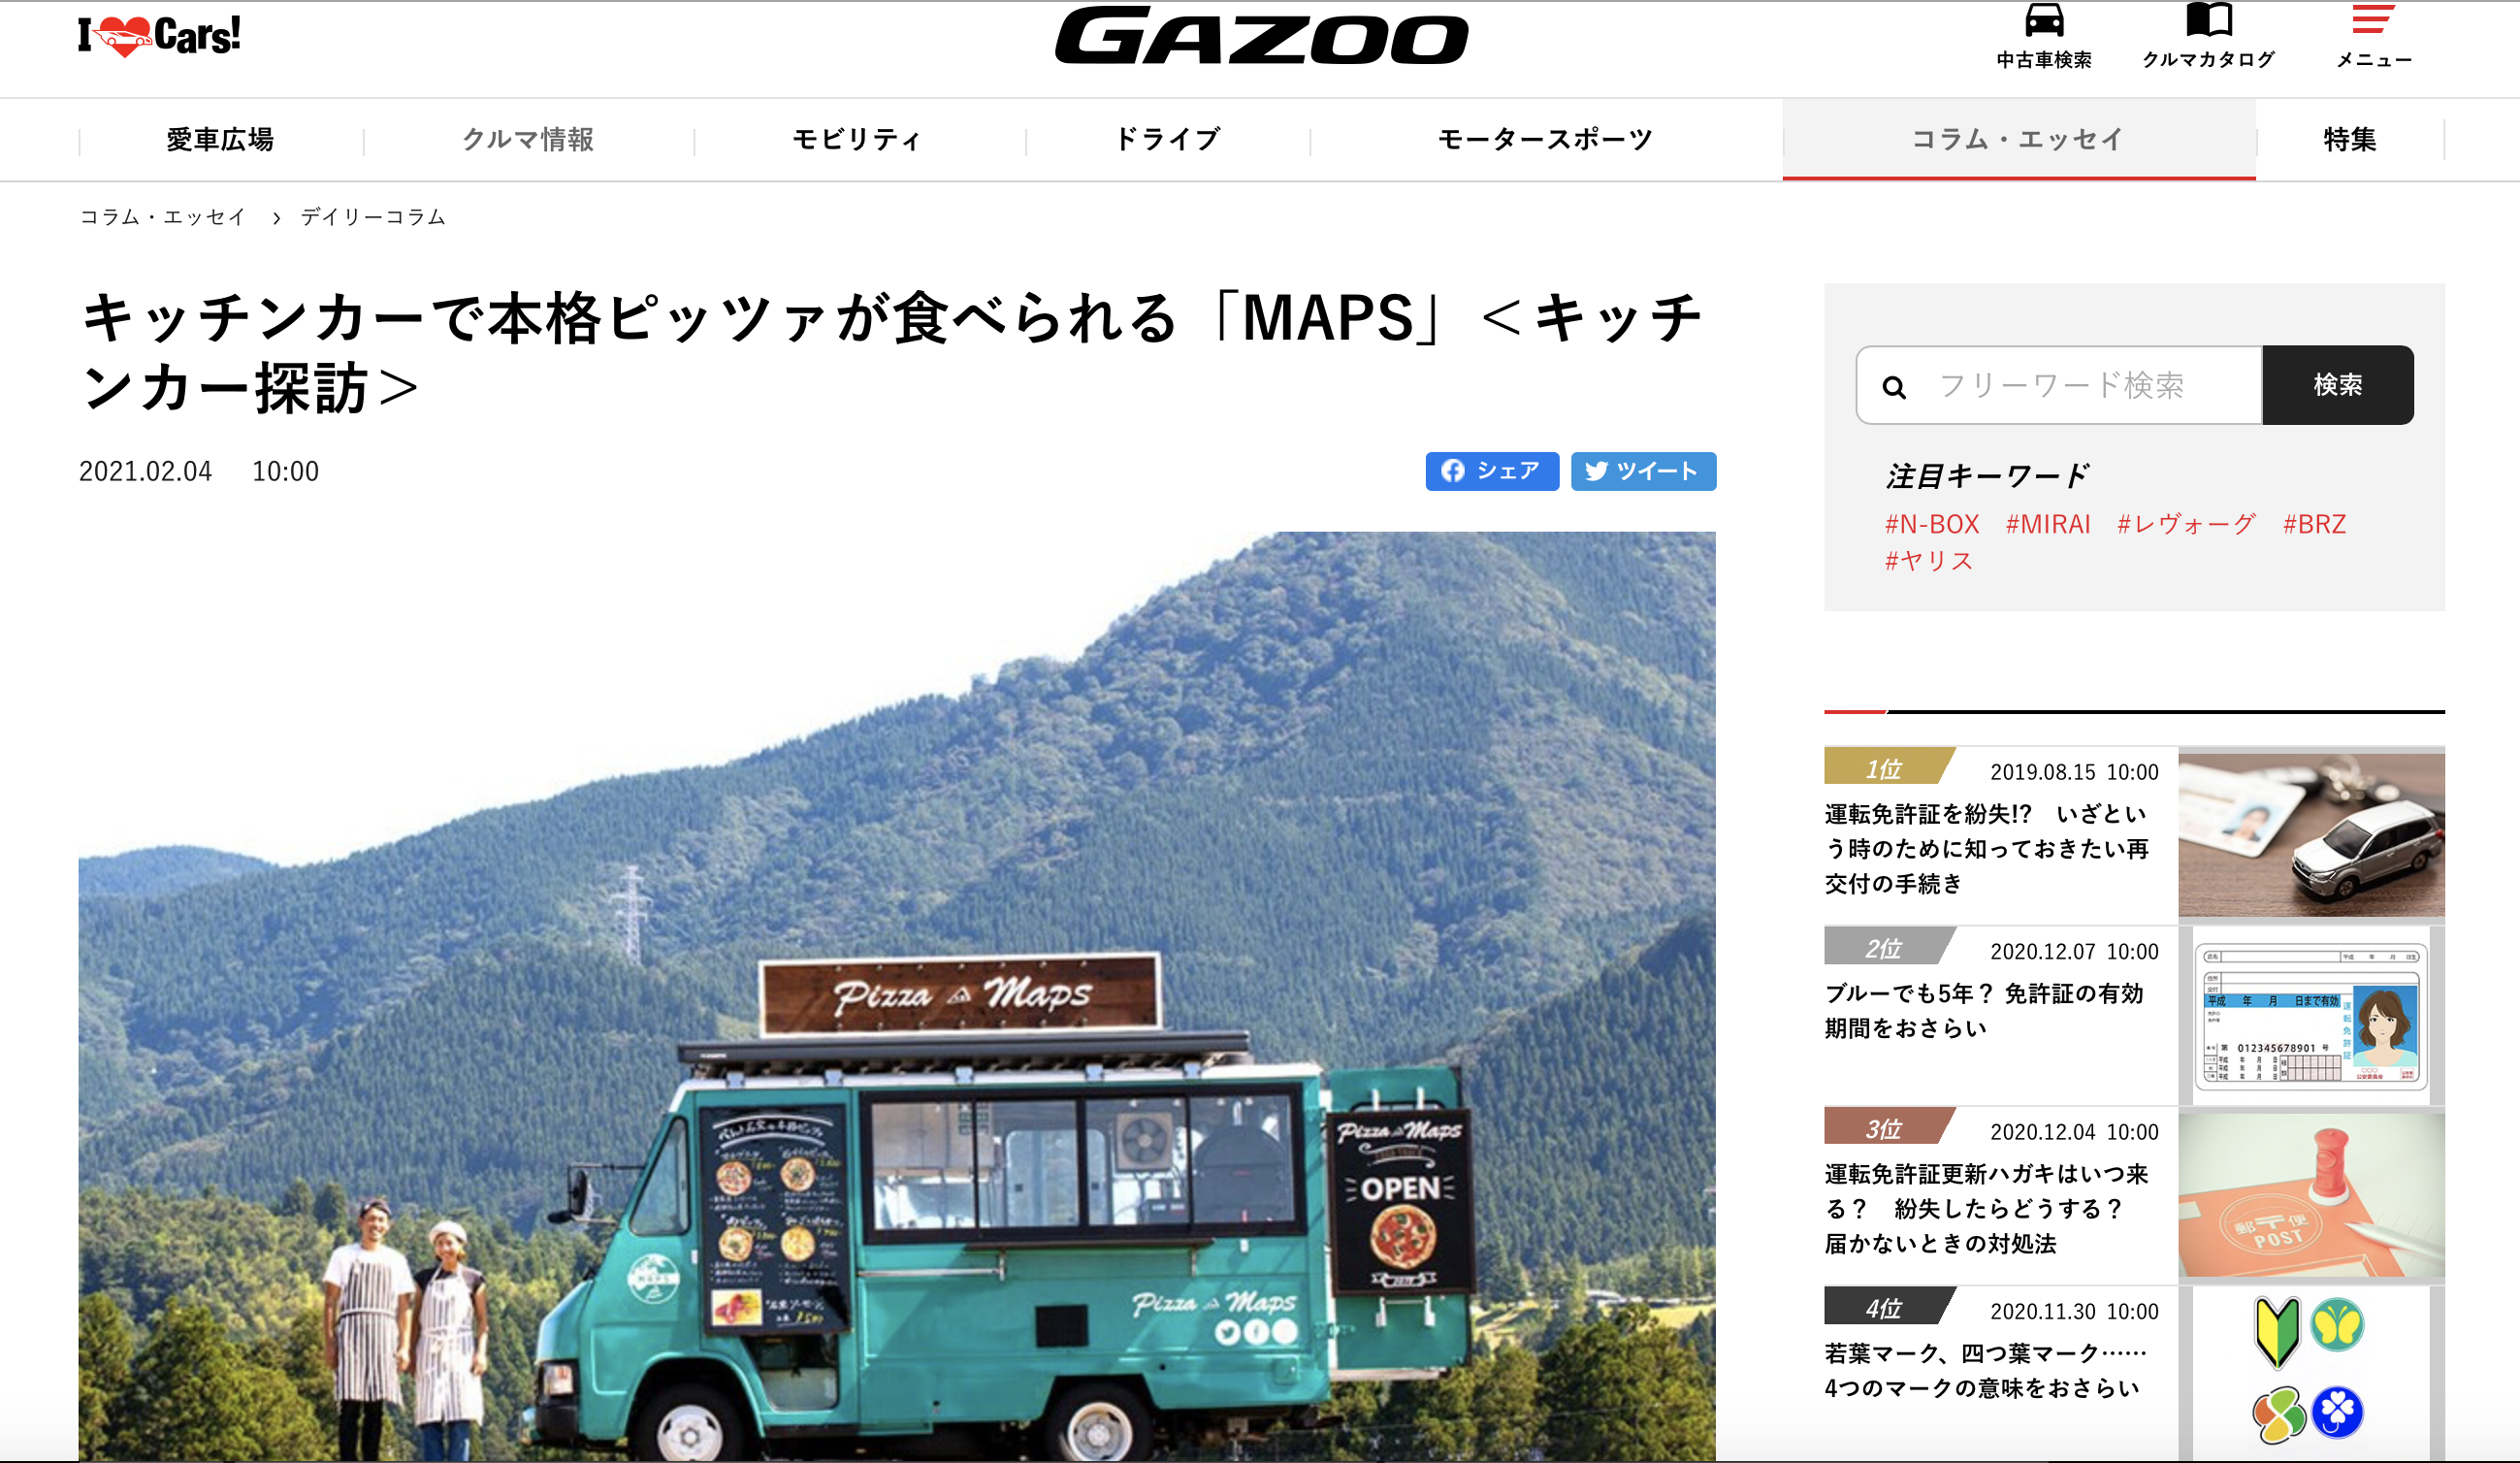 「トヨタ自動車」が運営するクルマコミュニティサイト「GAZOO」に掲載していただきました。